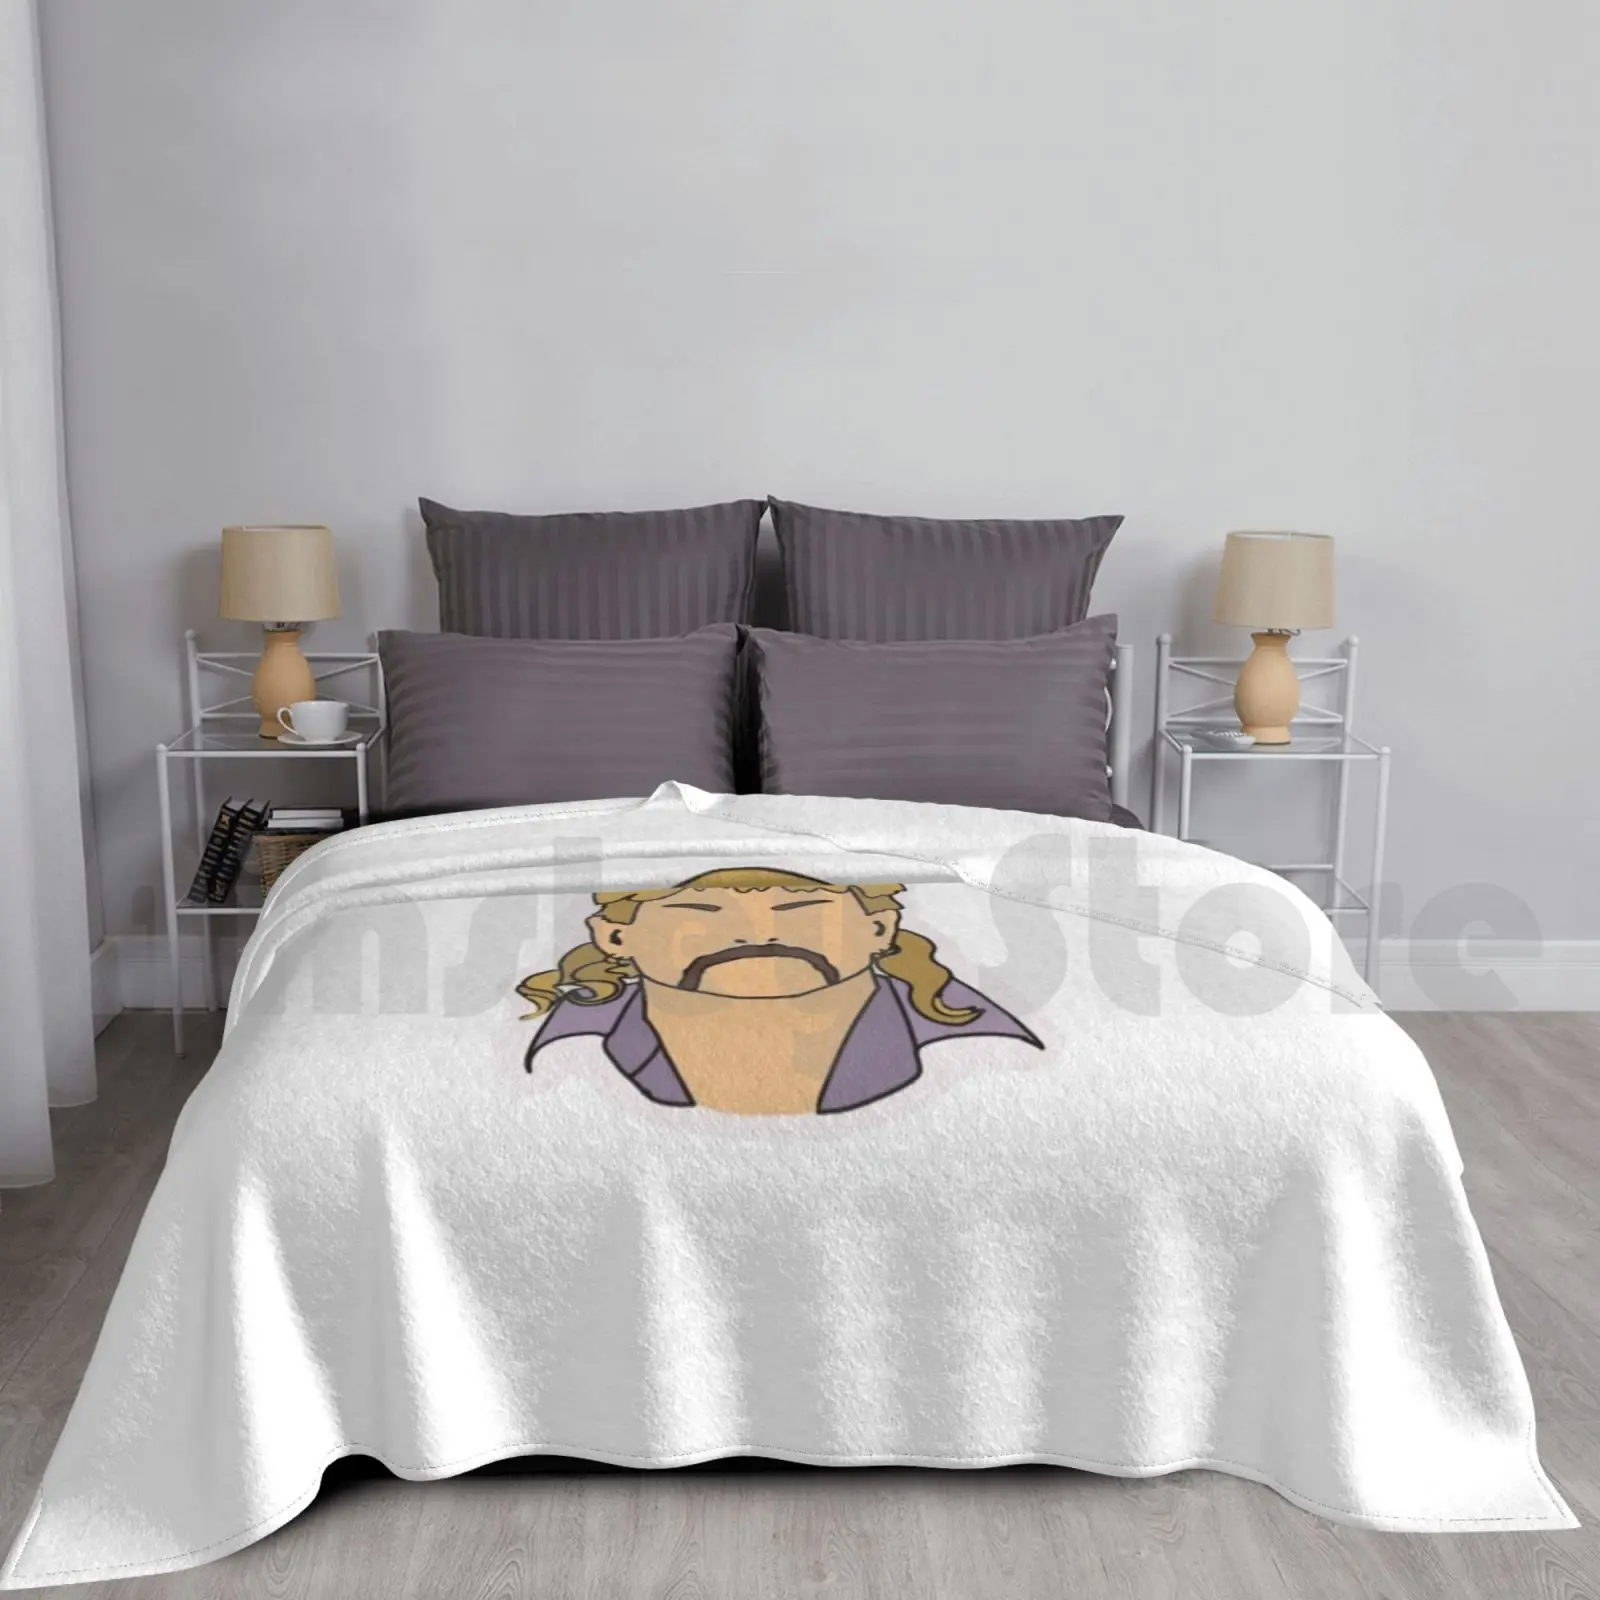 

Экзотическое одеяло Джо с наклейками для дивана-кровати путешествия Джо экзотическая Кэрол Баскин Тигр Кинг Тигры Джо Netflix Джо